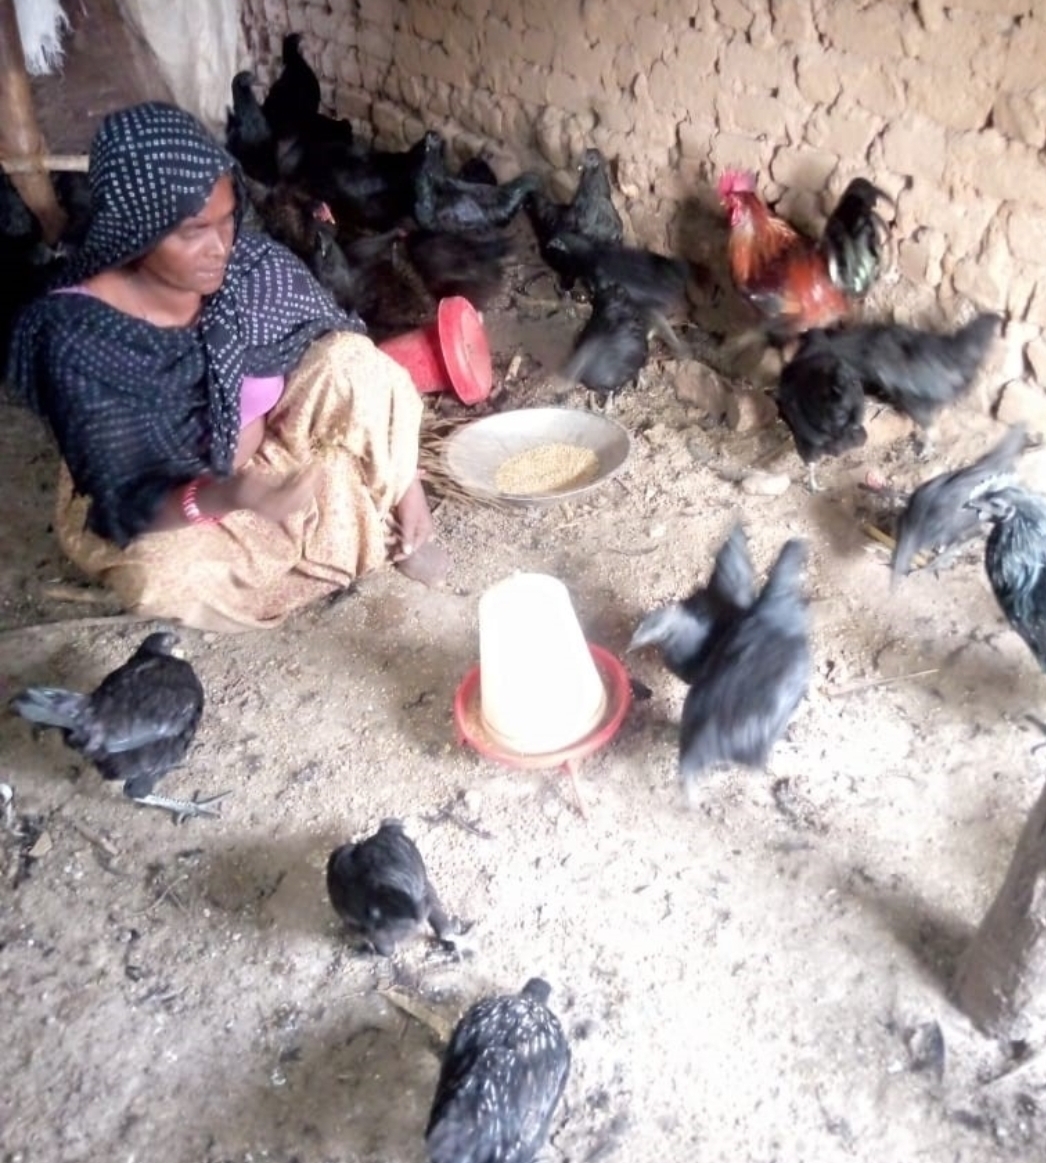 सफलता की कहानी श्रीमती गल्ली हेतिया मेडा की जुबानी: झाबुआ जिले के प्रसिद्ध कड़कनाथ मुर्गे- मुर्गियां का बिजनेस शुरू किया जिससे अच्छे से जीवन यापन हो रहा है... | New India Times